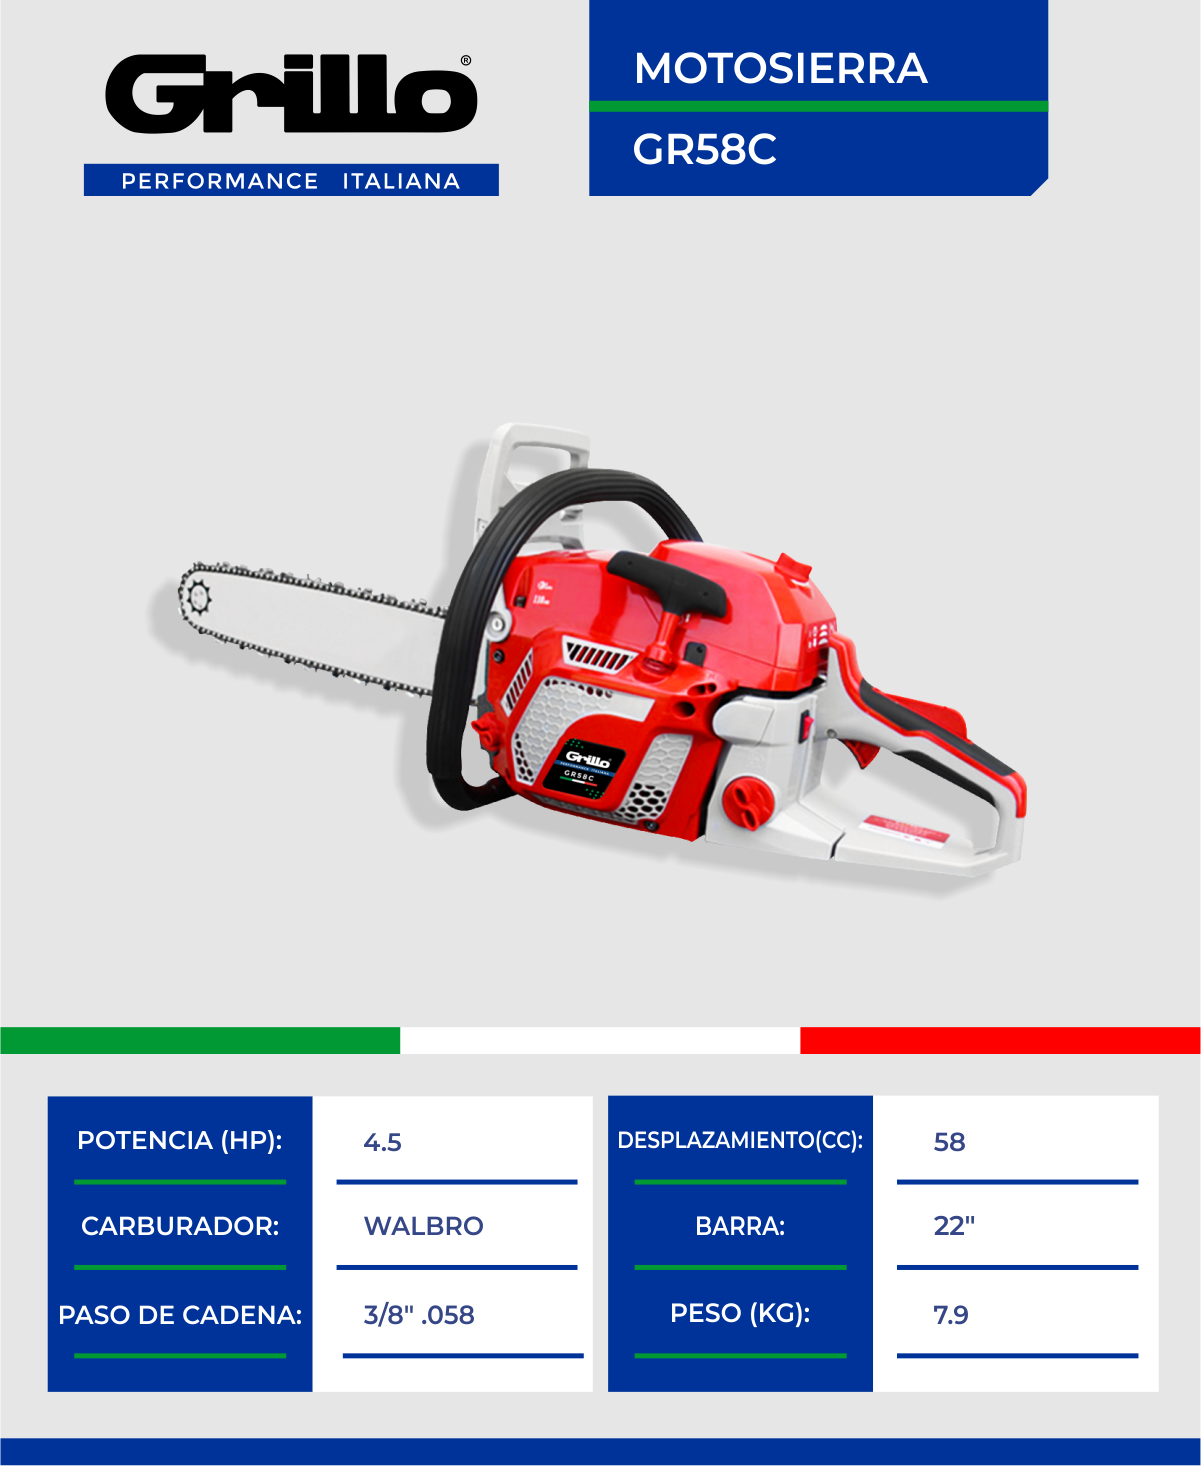 RMA Echevarría distribuidor oficial de la marca Grillo en Cantabria.